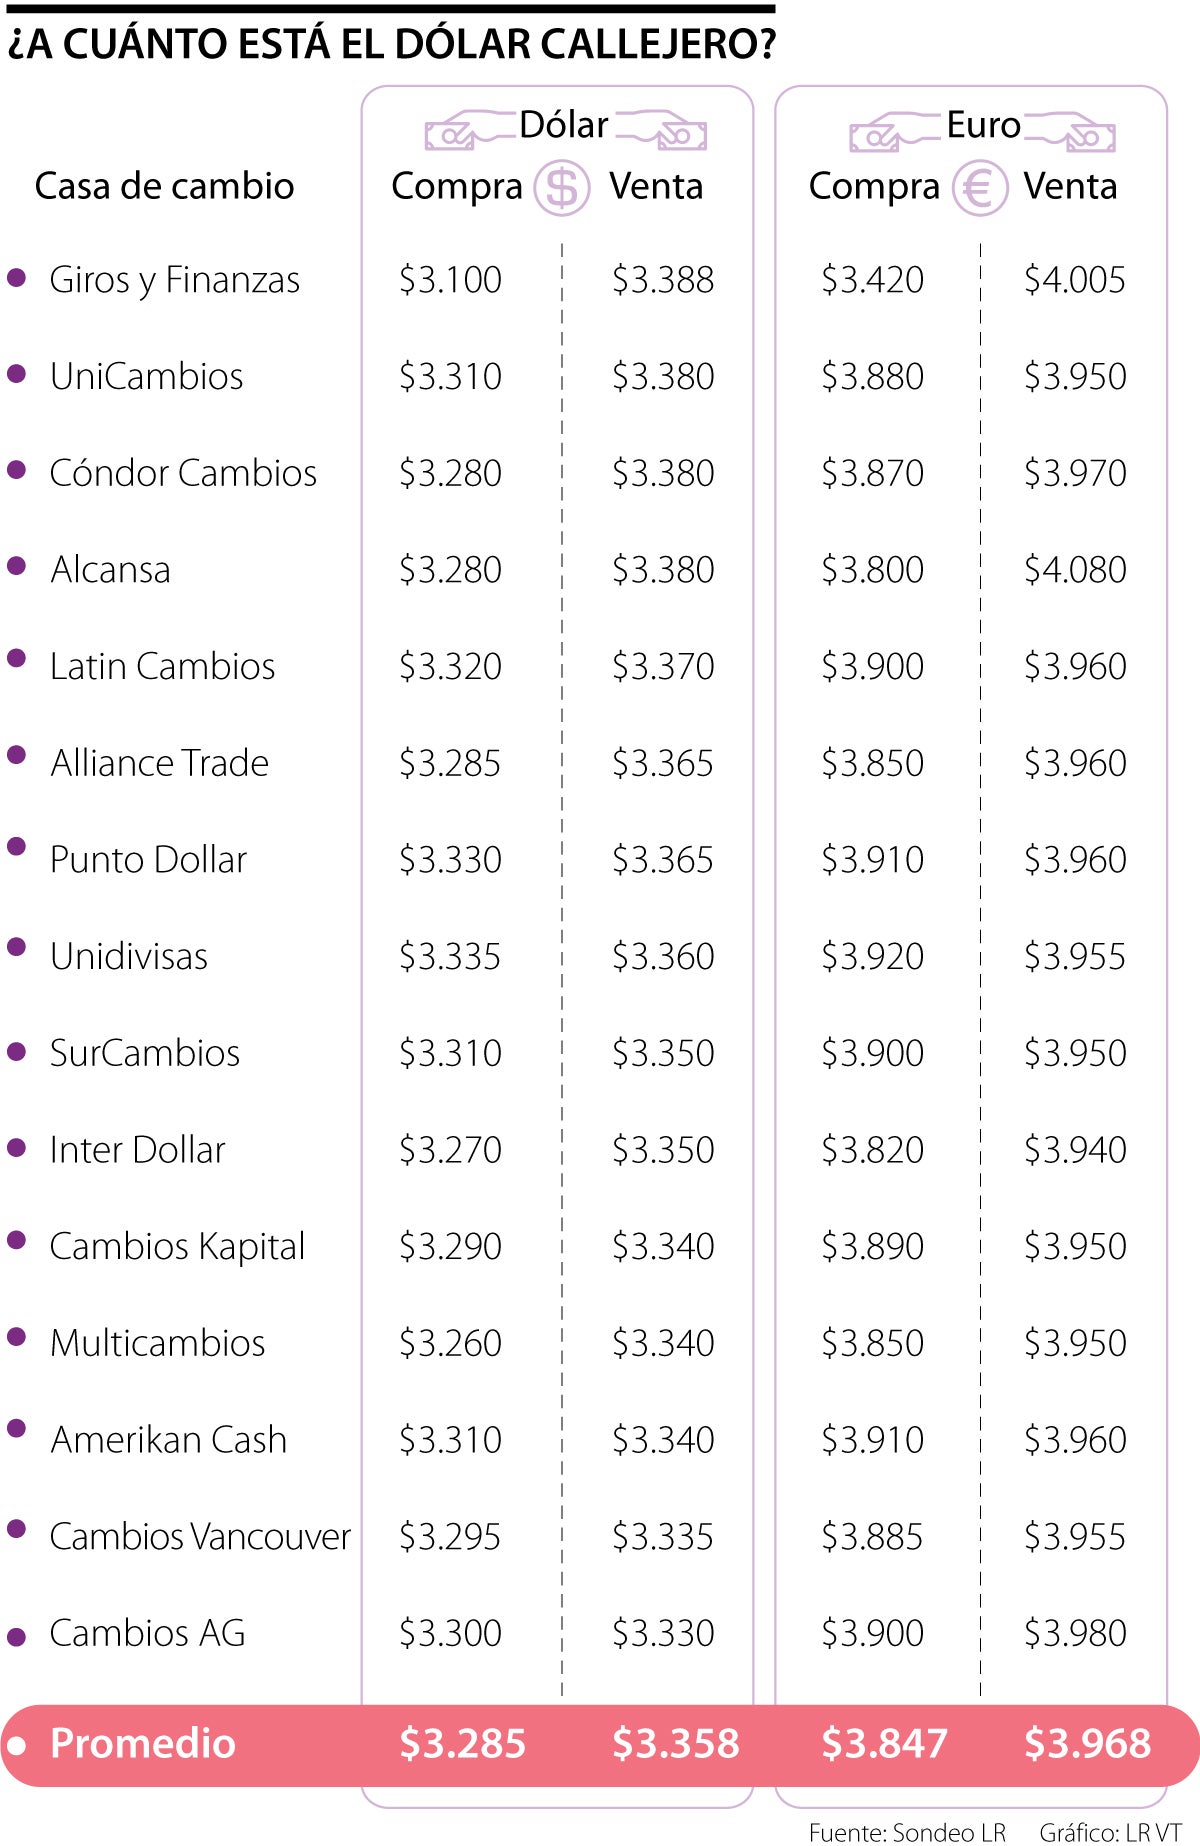 Arqueología formato azúcar El precio del dólar en las casas de cambio está $282 más barato que en los  bancos